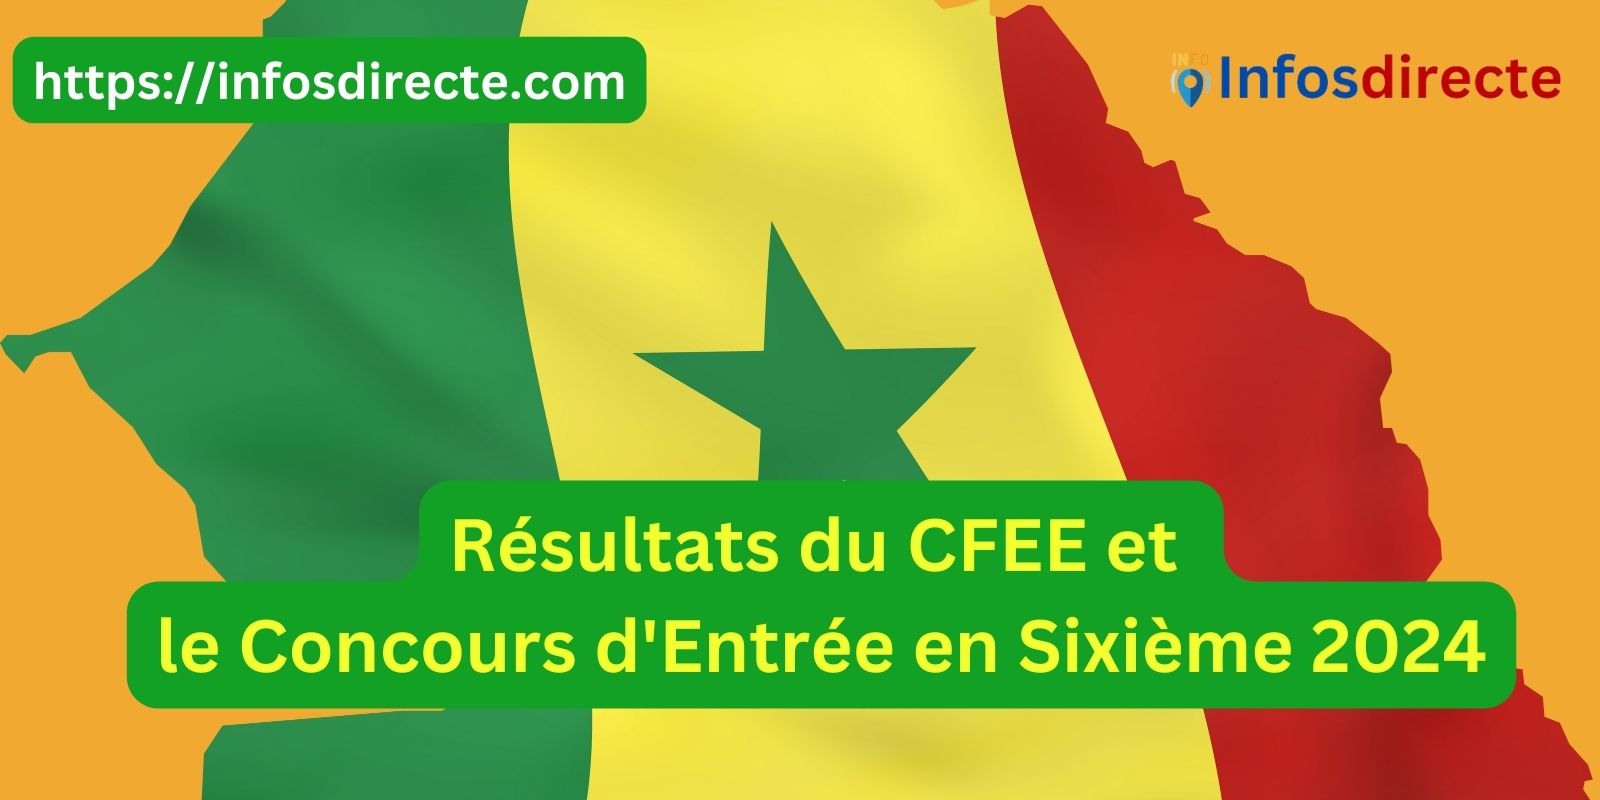 Plus de 300 000 candidats attendent les résultats du CFEE et le Concours d'Entrée en Sixième 2024 au Sénégal